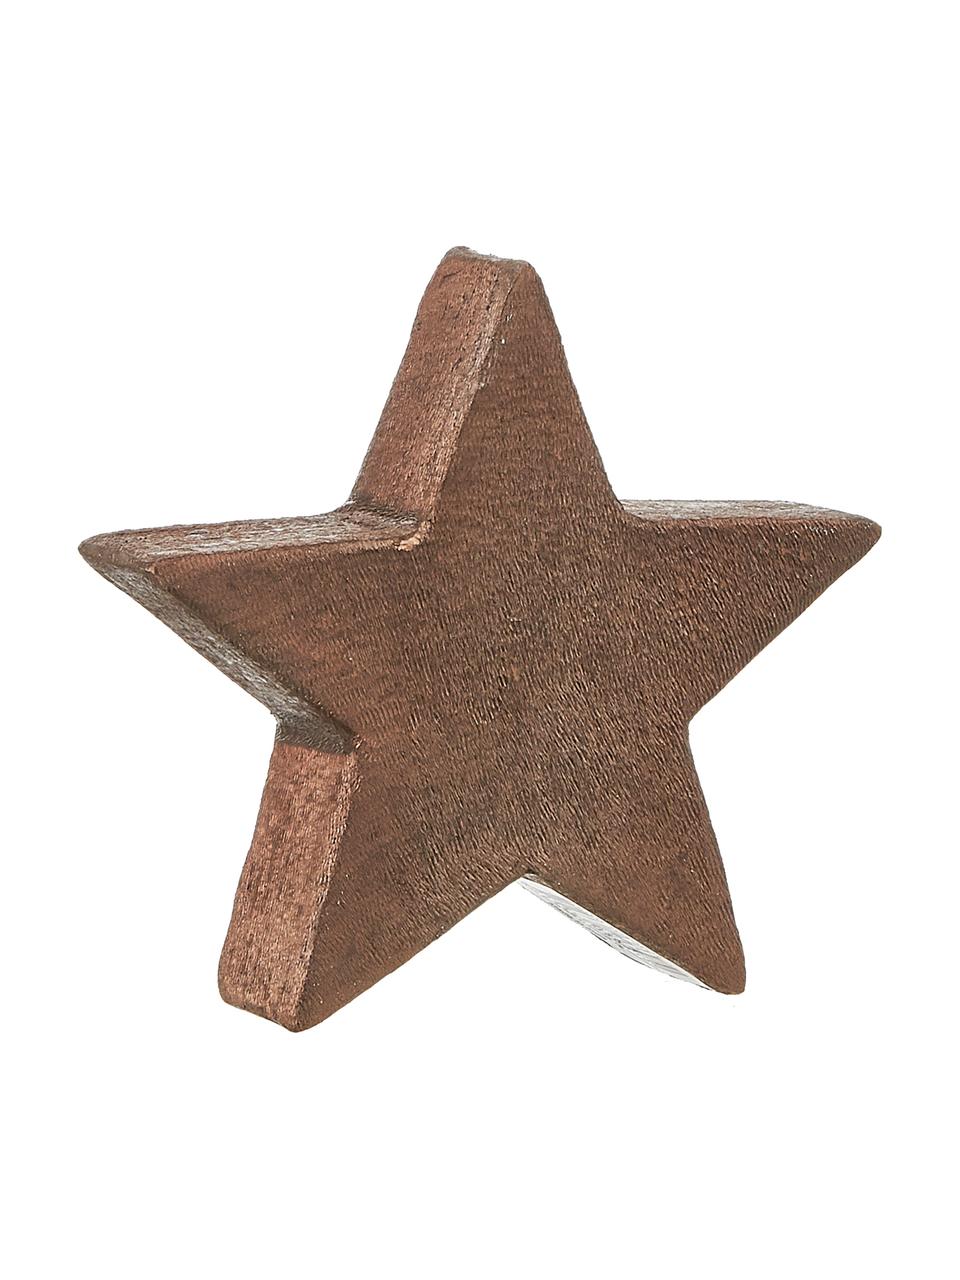 Dekoracja Mace-Star, Aluminium powlekane, Brązowy, S 15 x W 15 cm